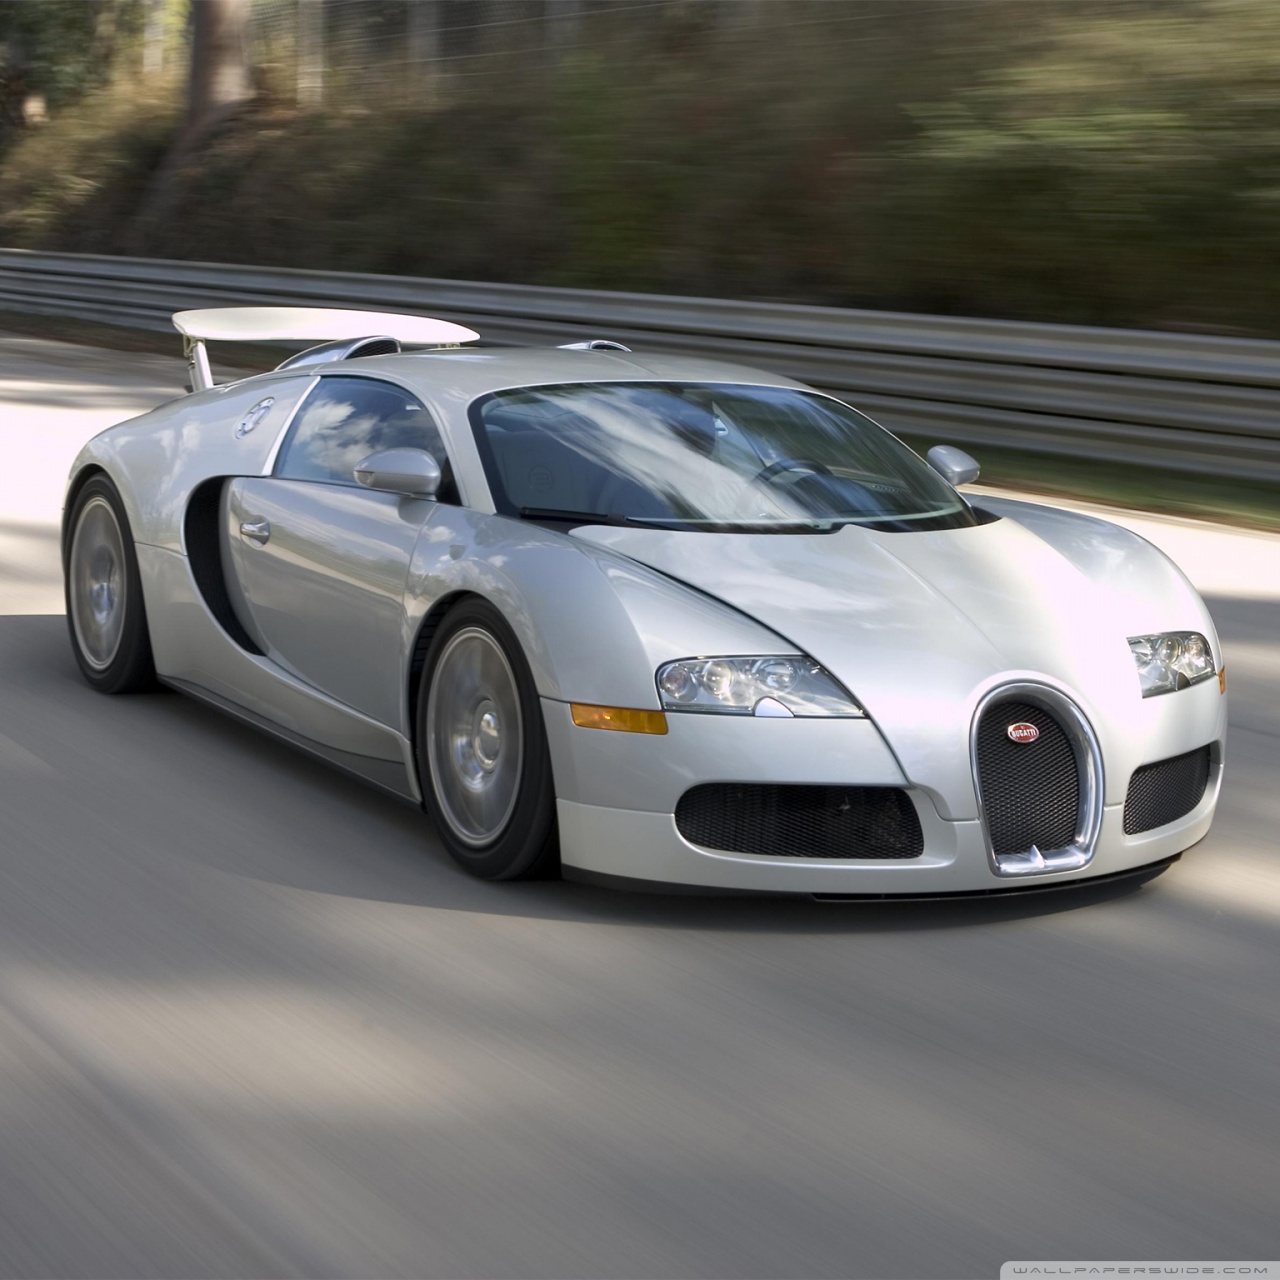 Ipad - Bugatti Veyron , HD Wallpaper & Backgrounds